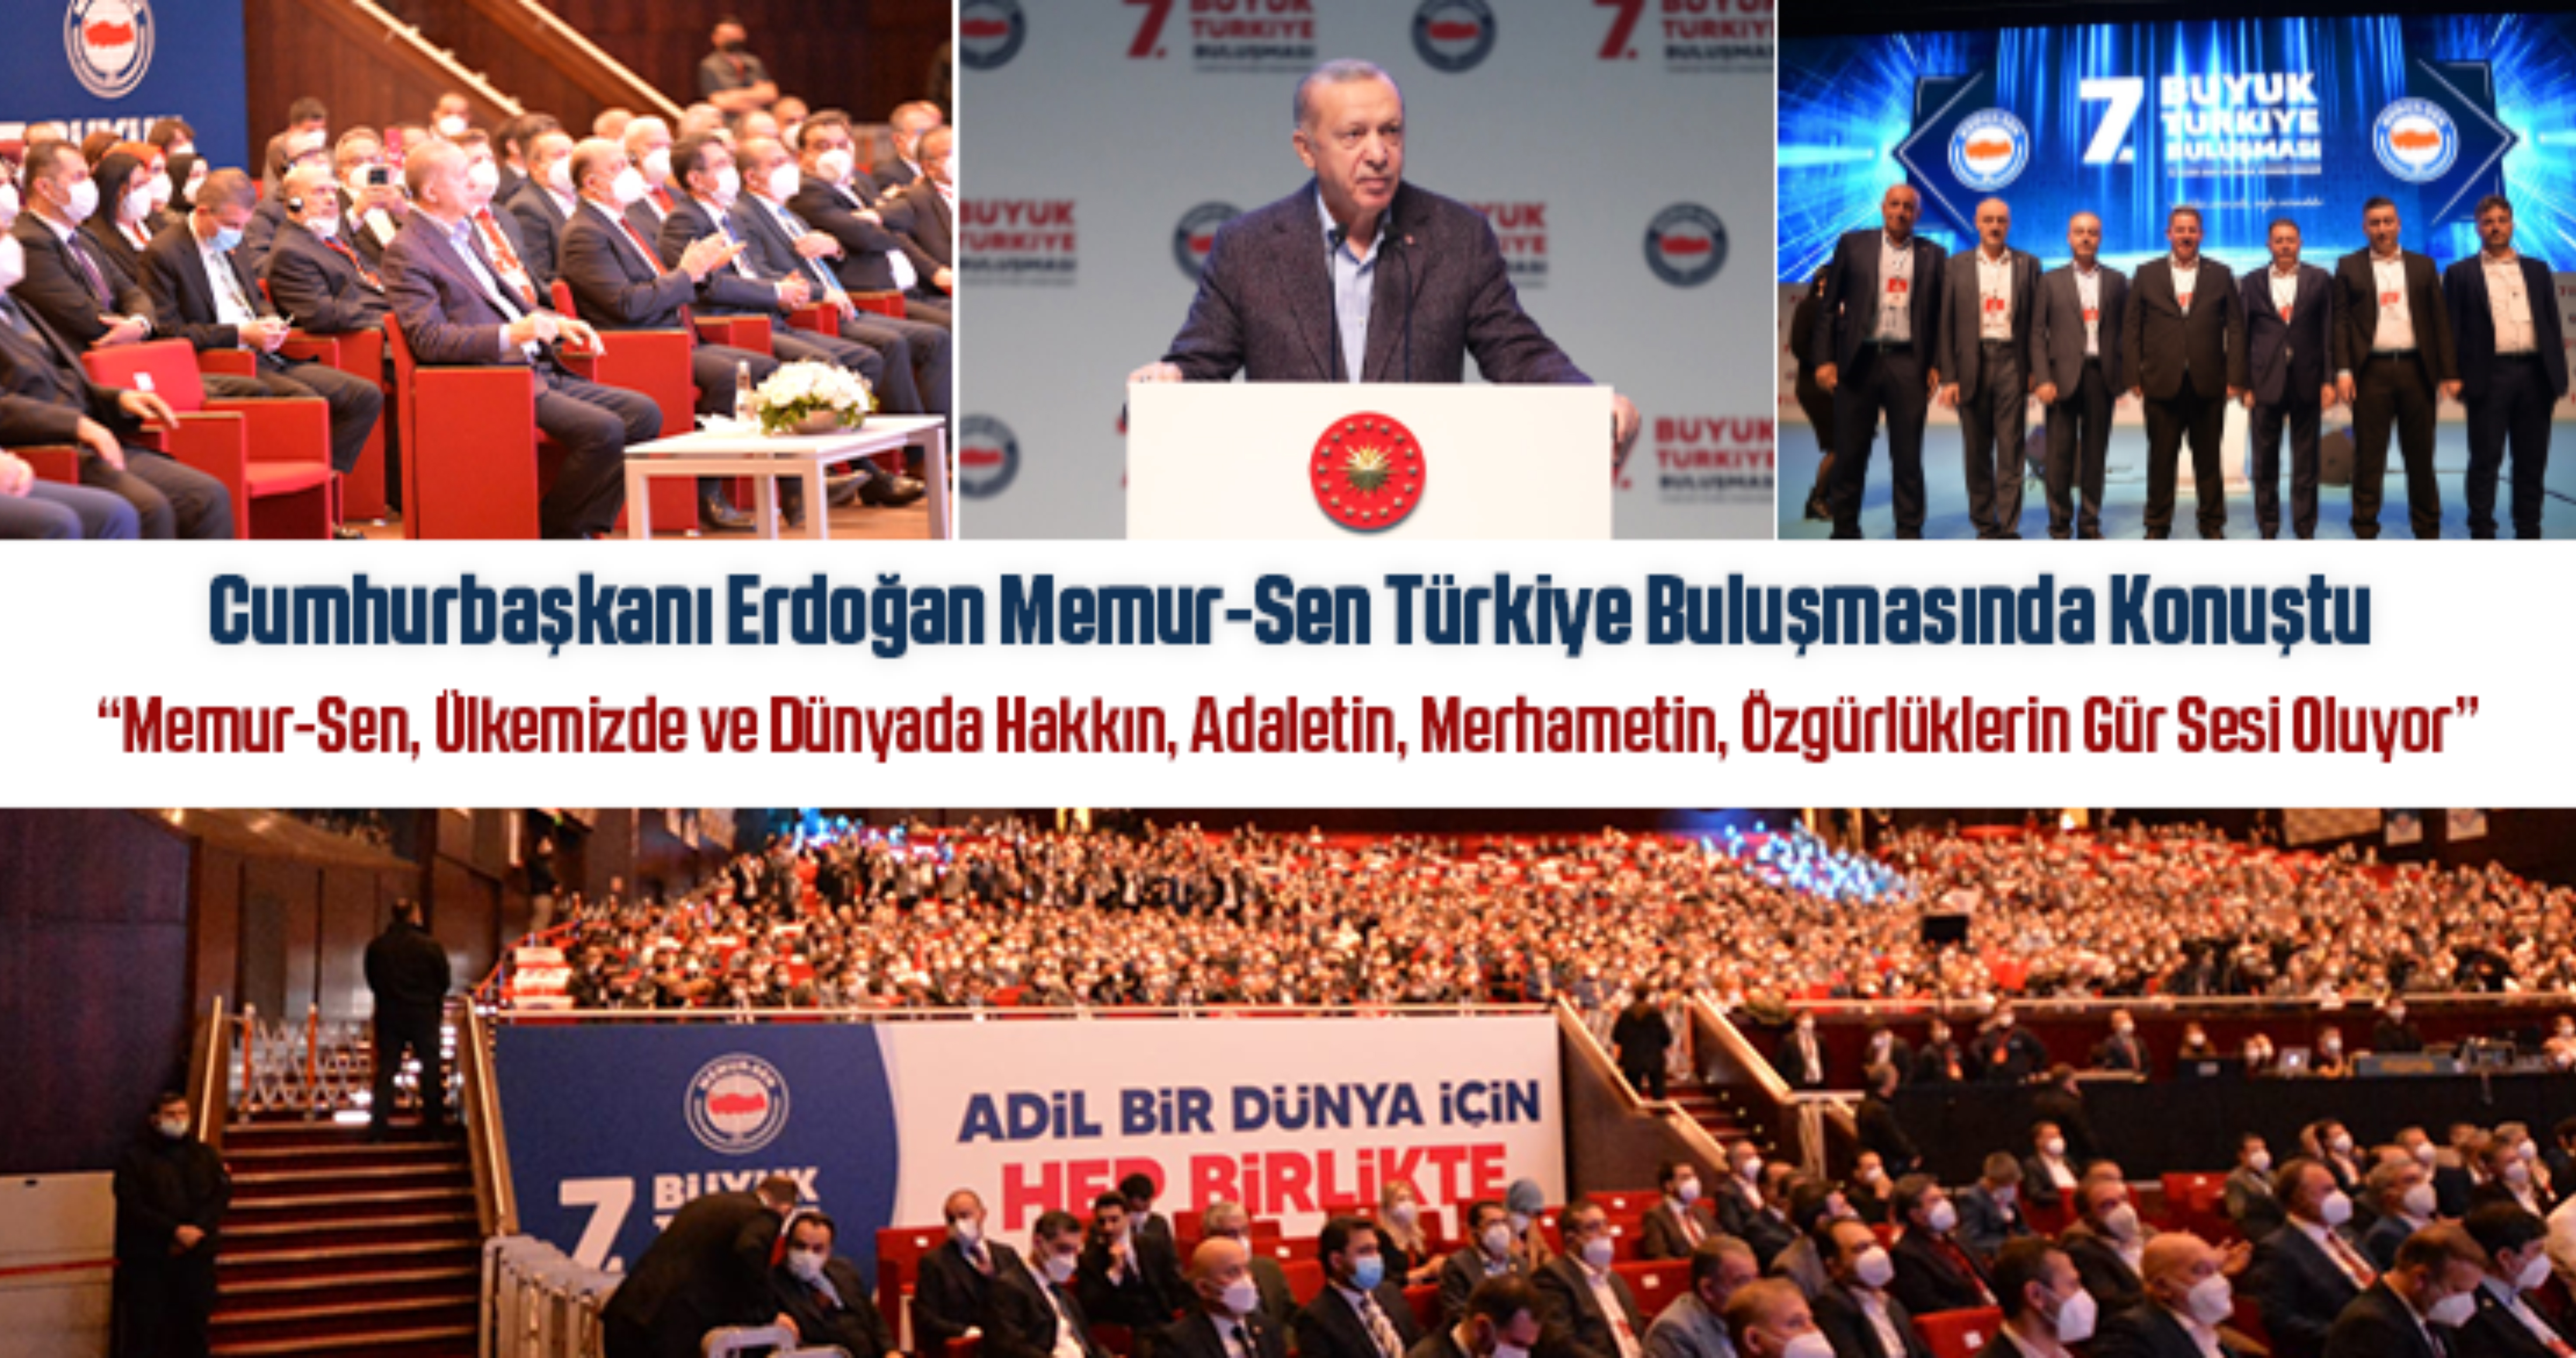 Cumhurbaşkanı Erdoğan Memur-Sen Türkiye Buluşmasında Konuştu